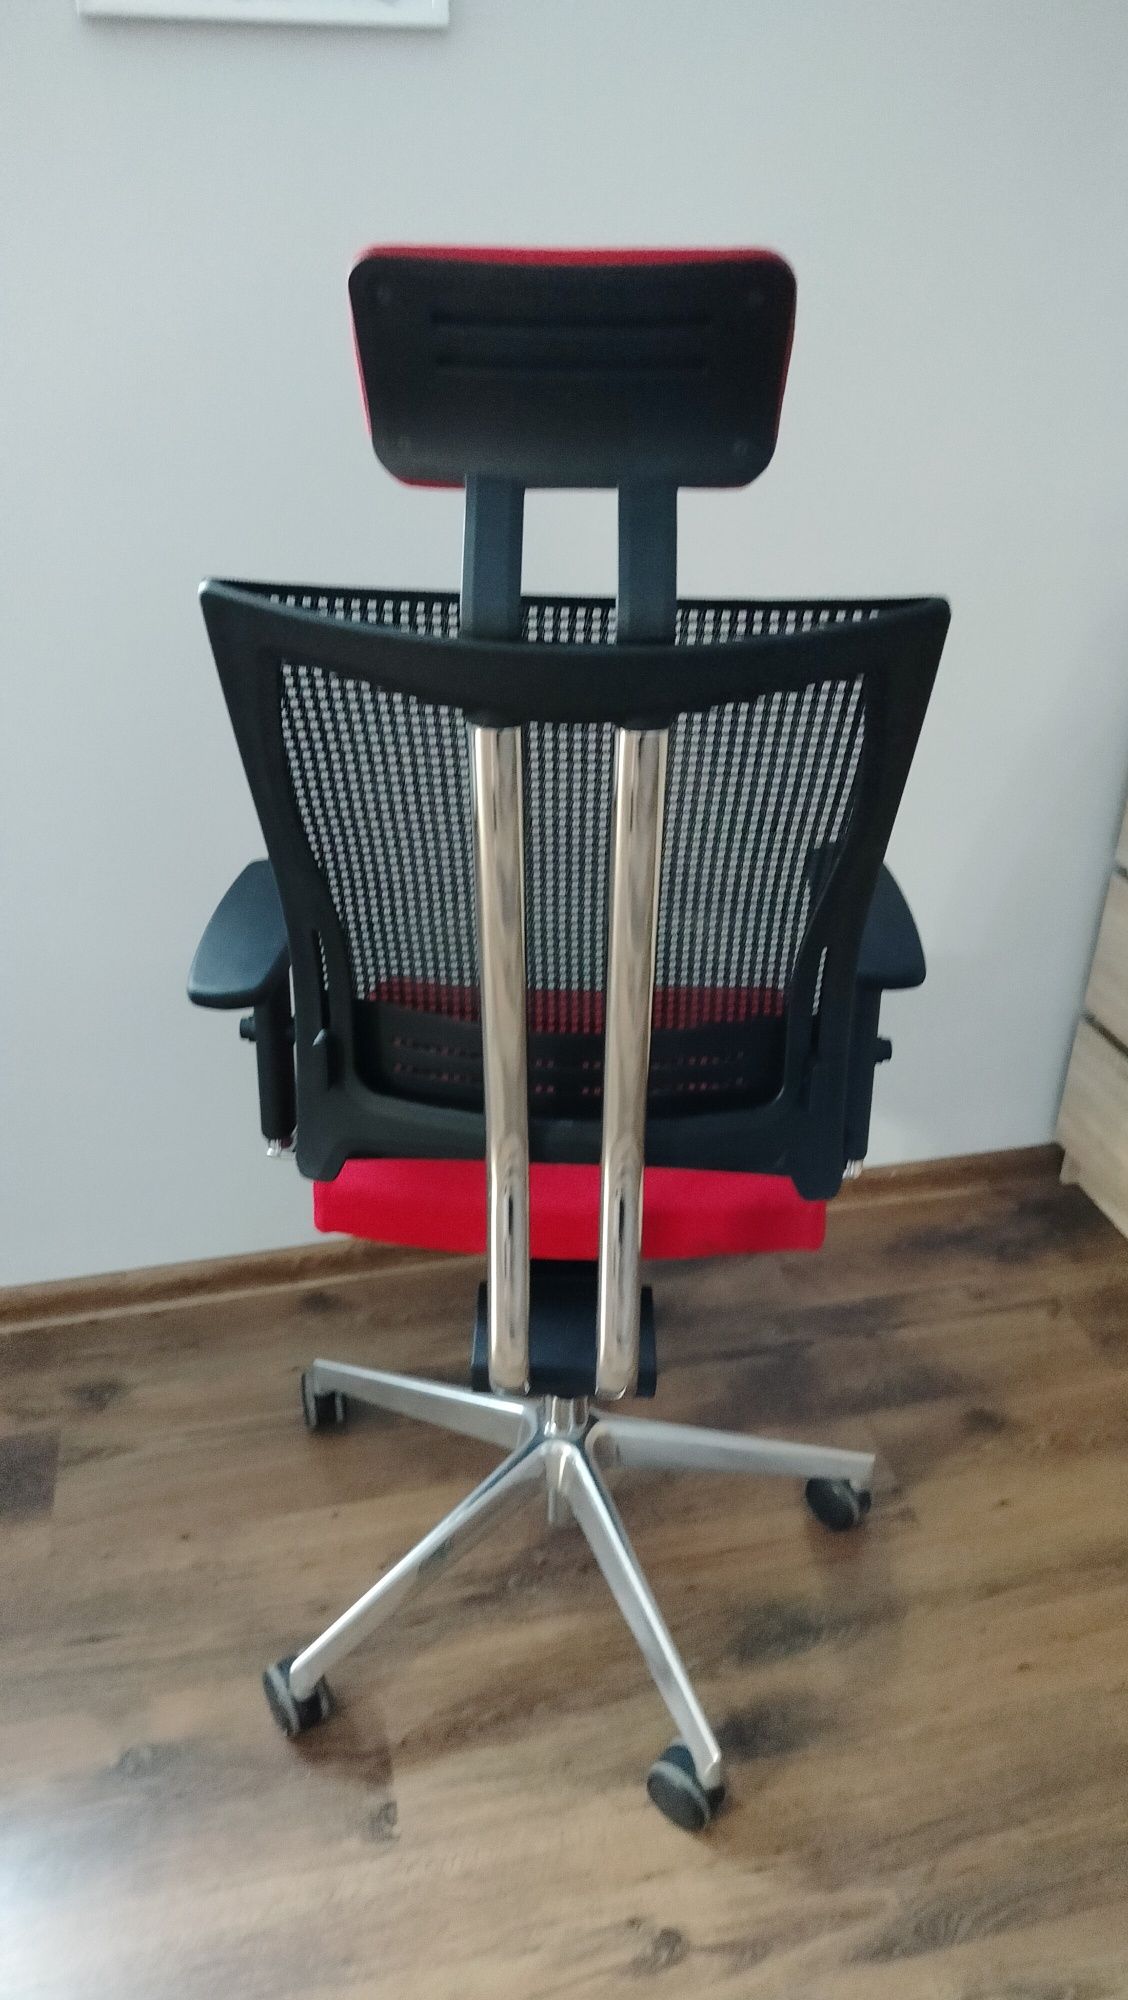 Nowoczesne krzesło biurowe New Motion